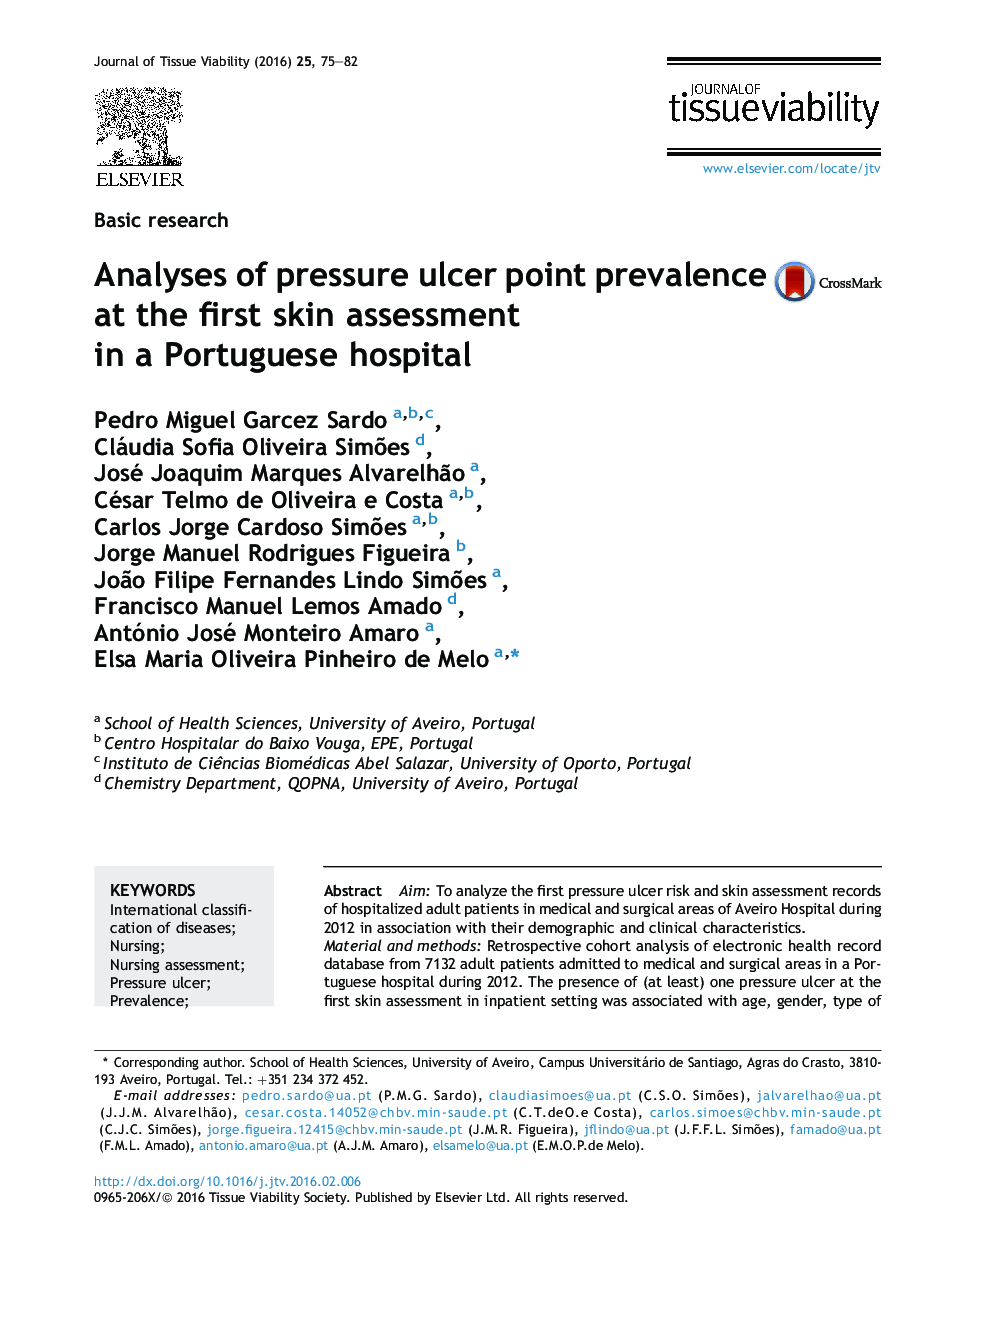 تحقیقات پایه تحقیقات شیوع ضایعه فشار زخم در ارزیابی پوست اول در یک بیمارستان پرتوتیو 